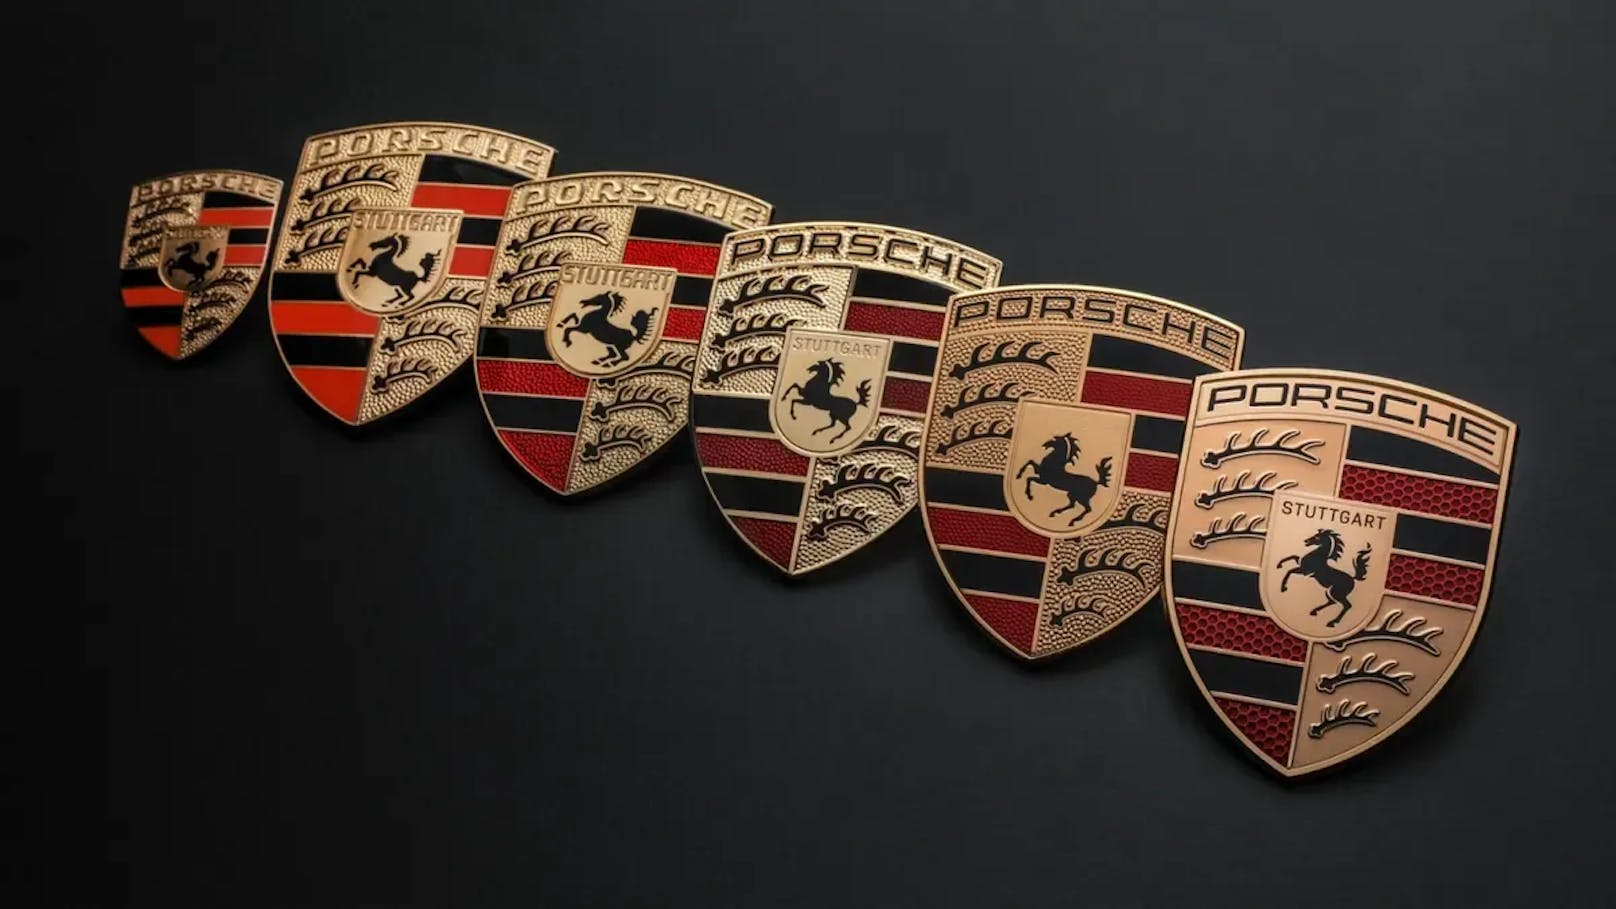 Das Porsche-Logo hat sein Aussehen im Verlaufe der Jahre bereits mehrmals geändert. 1954, 1963, 1973, 1994 und zuletzt 2008 erfuhr es Design-Überarbeitungen.